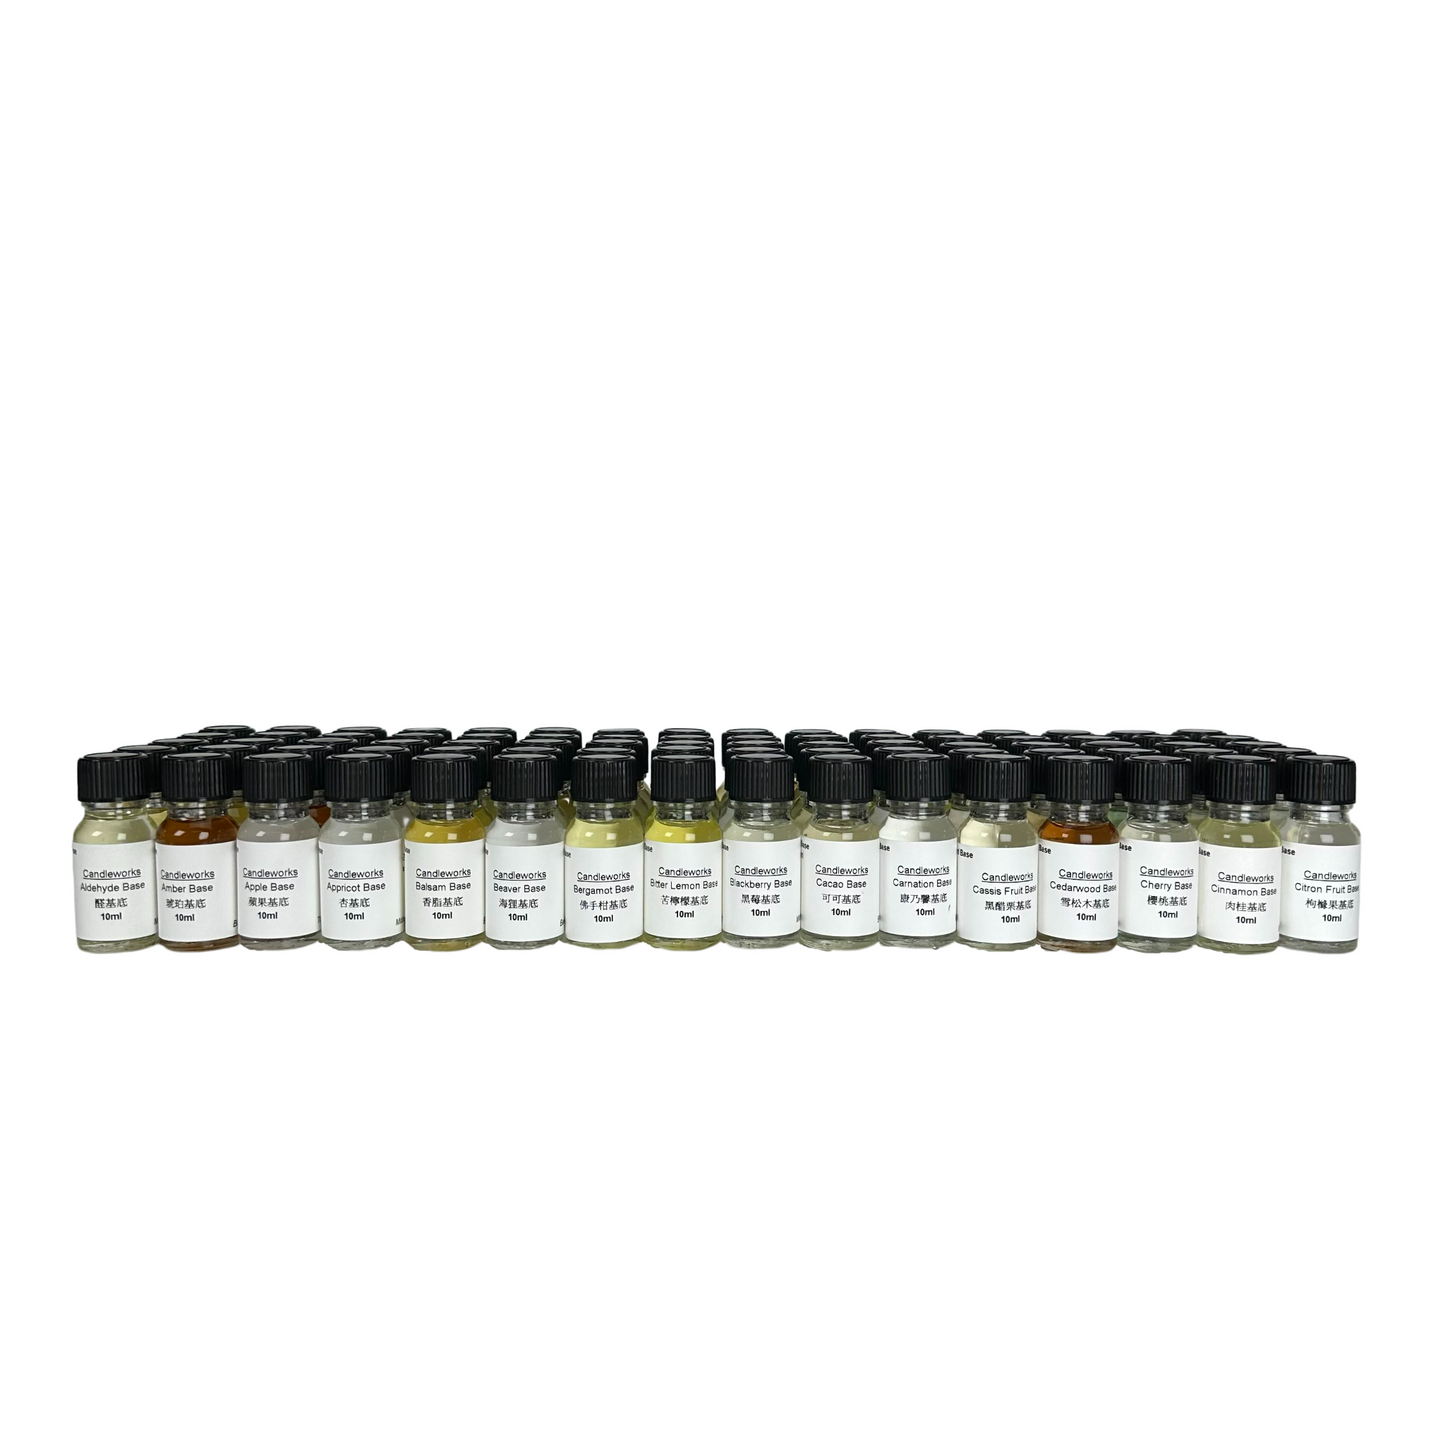 Perfume Base Blending Kit Fragrance base oil trial set 10ml x 80 Types